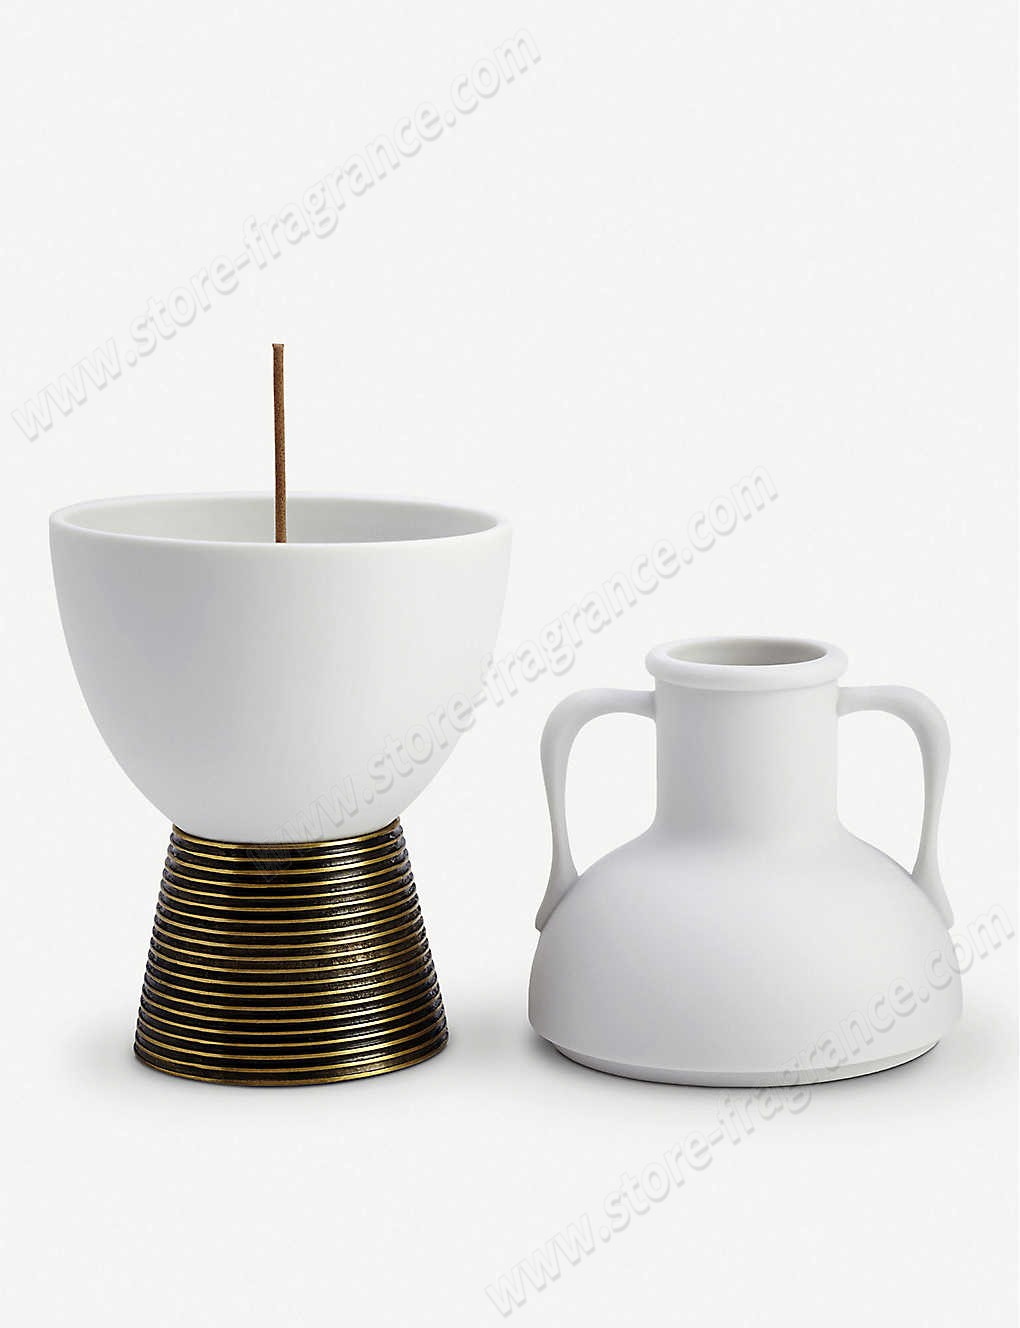 L'OBJET/Amphora Limoges porcelain incense holder Limit Offer - L'OBJET/Amphora Limoges porcelain incense holder Limit Offer